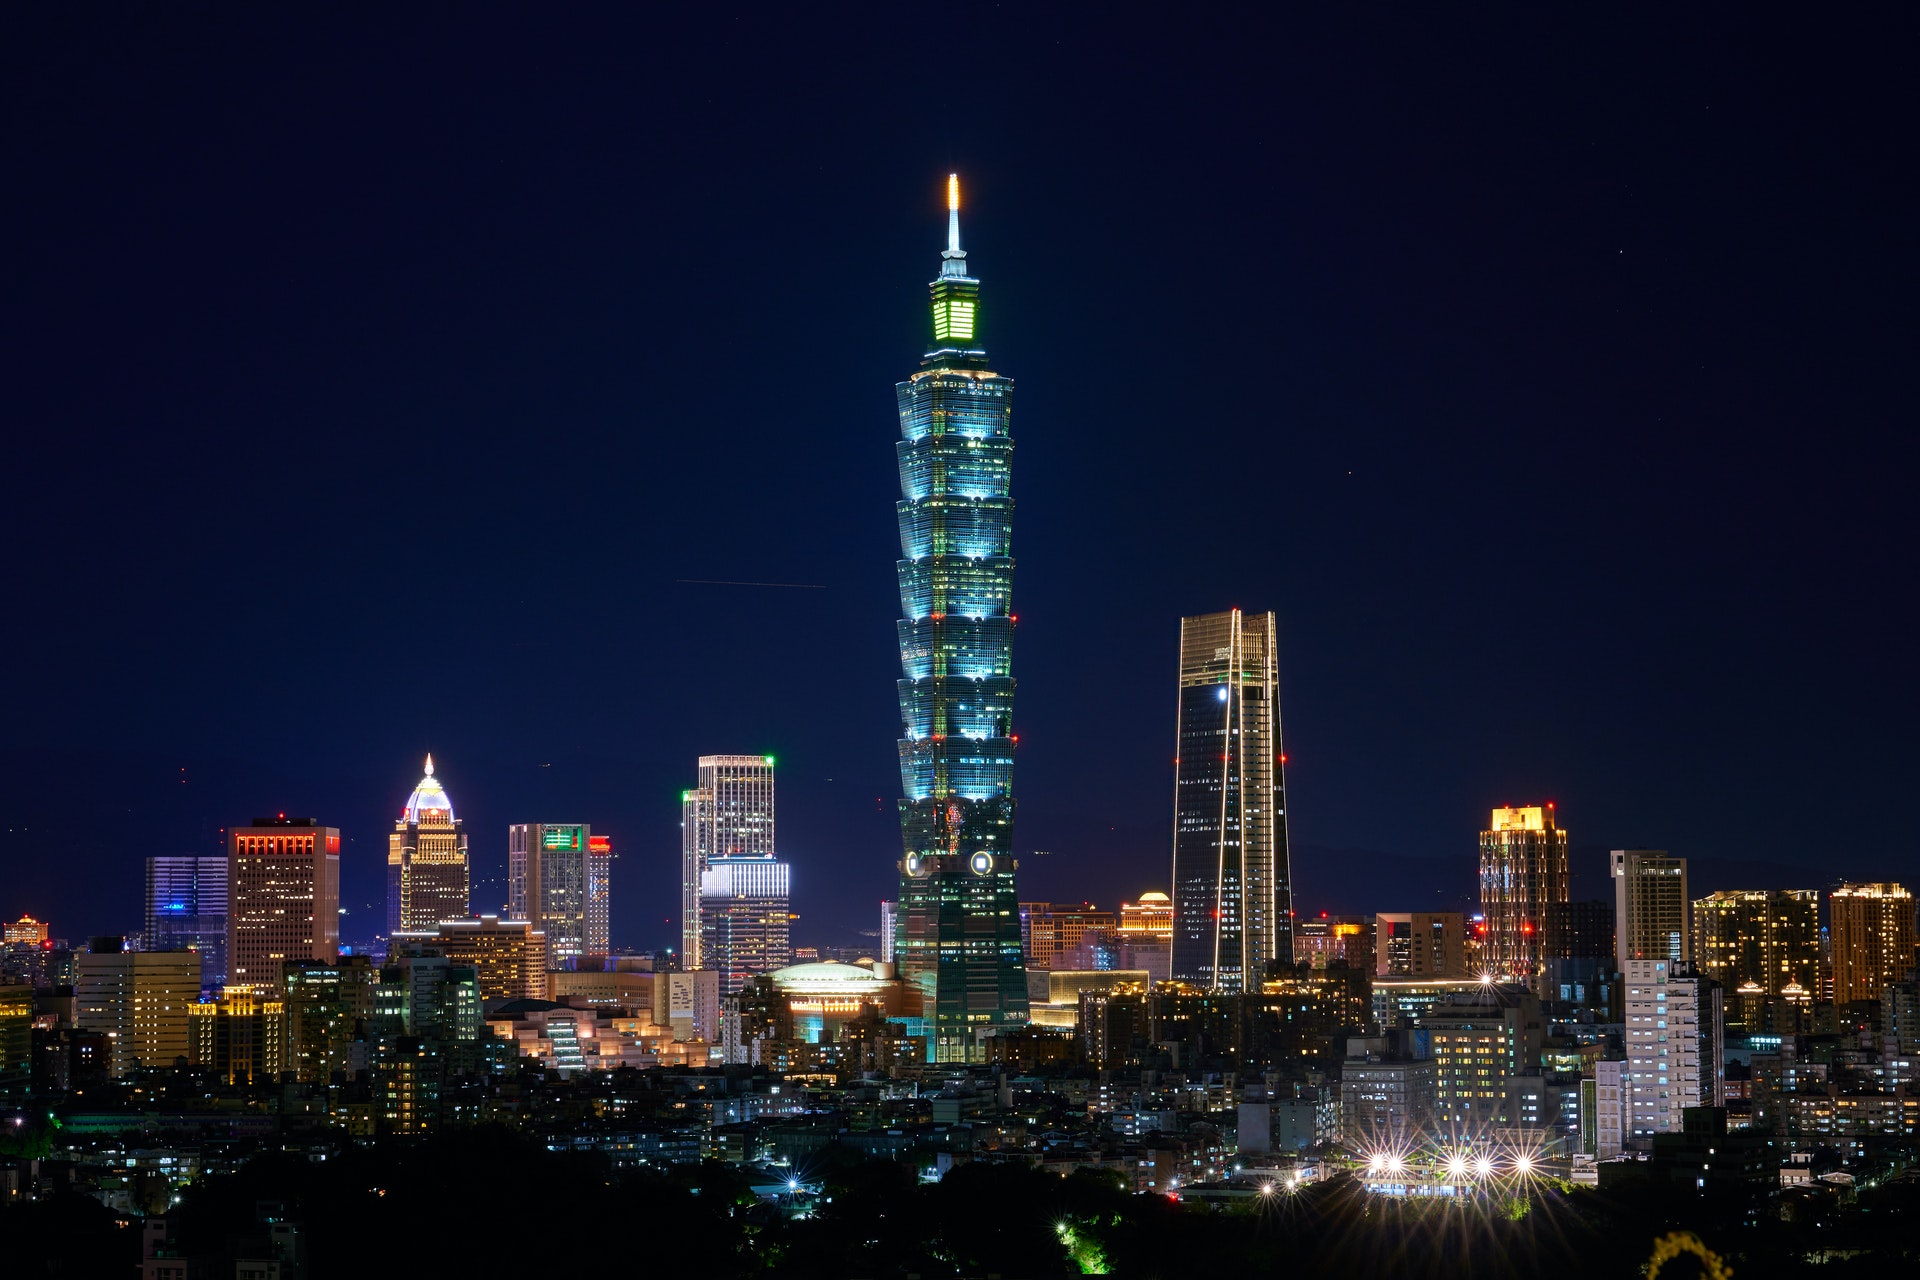 Taïwan a subi un pic de cybermenaces en marge de la visite de l'Américaine Nancy Pelosi